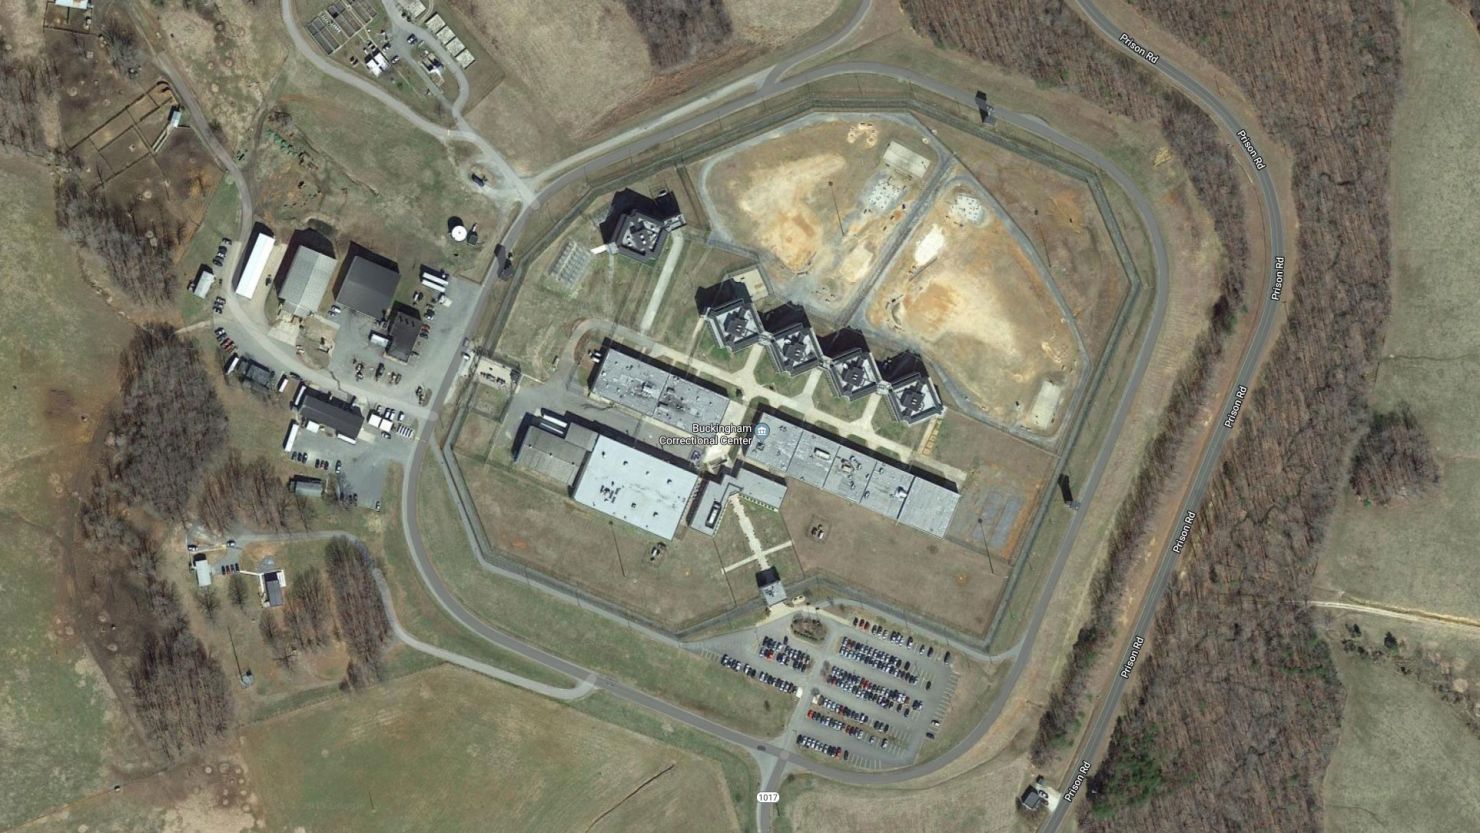 The Buckingham Correctional Center in Dillwyn, Virginia.